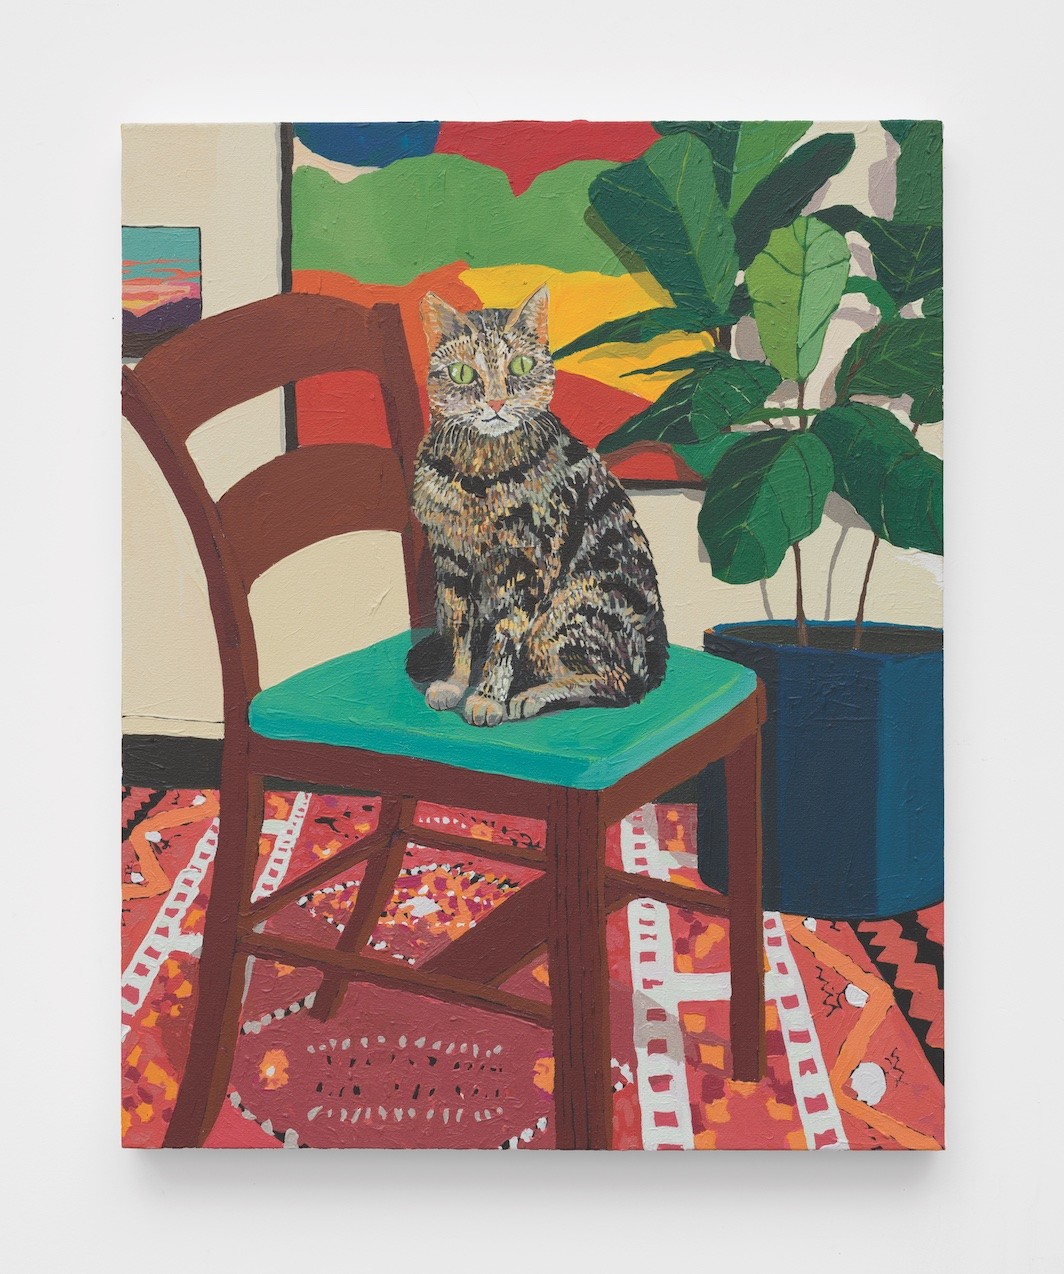 Hilary Pecis, Kaba on a Chair, 2019, acrylic on canvas, 30 x 24”. © Hilary Pecis/Courtesy the artist and Rachel Uffner Gallery